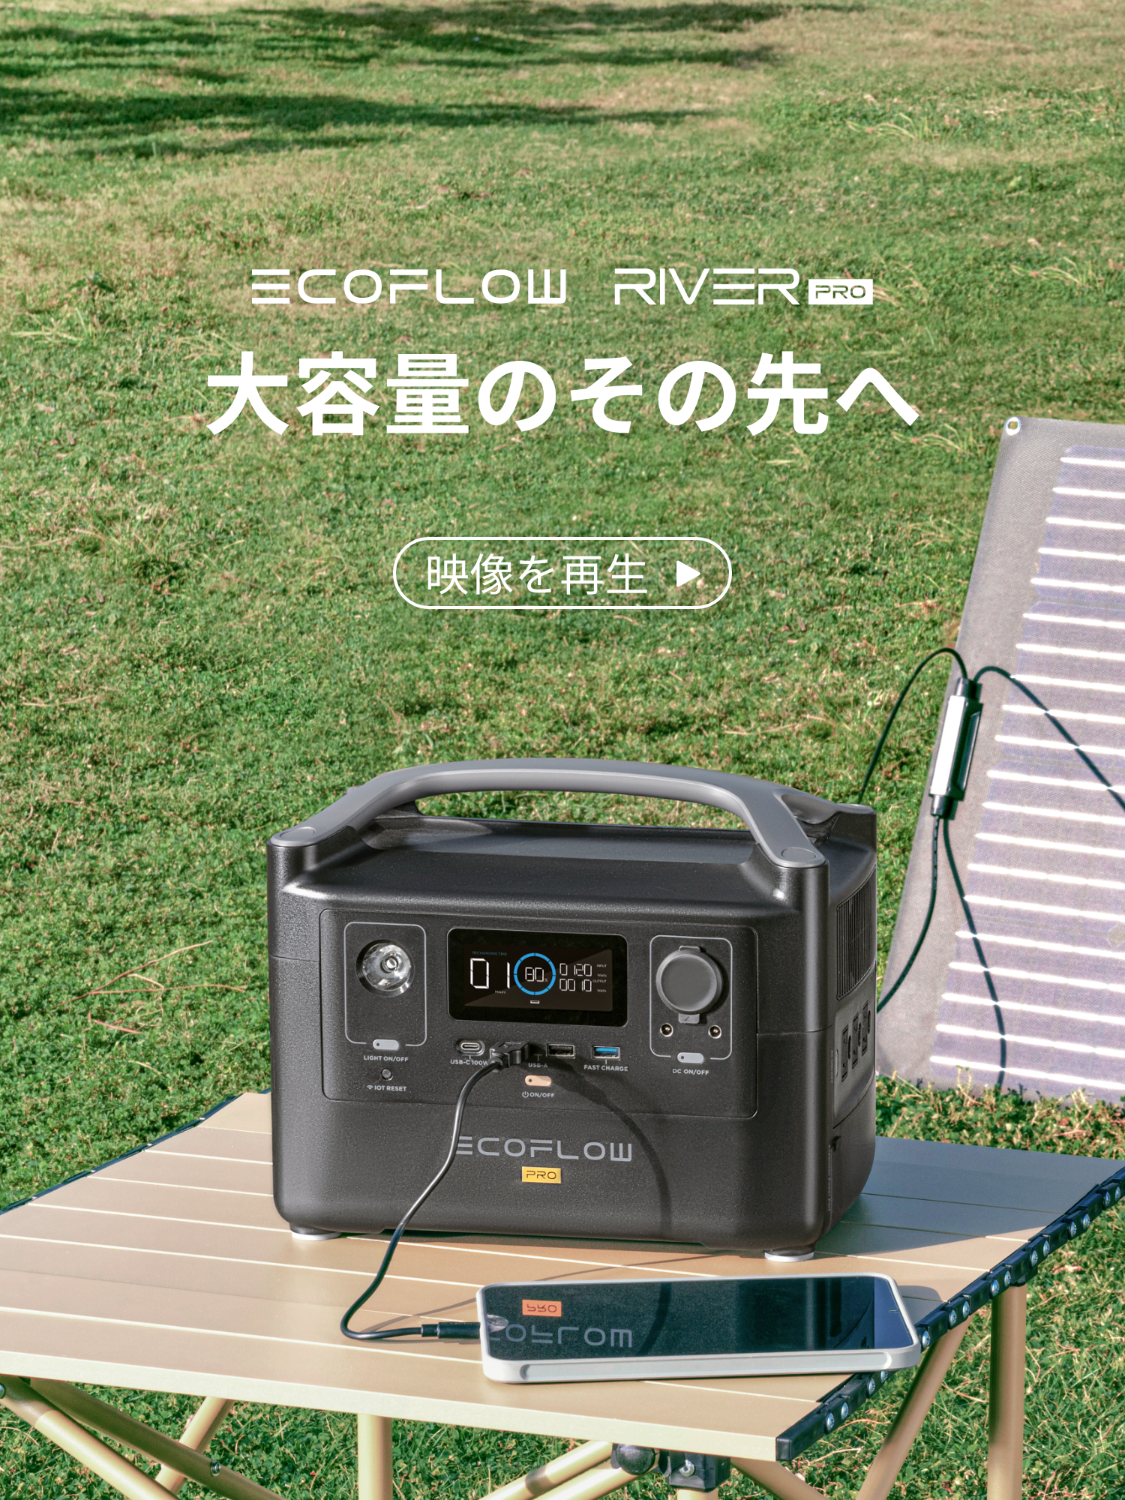 ECOFLOW RIVER 600 PRO